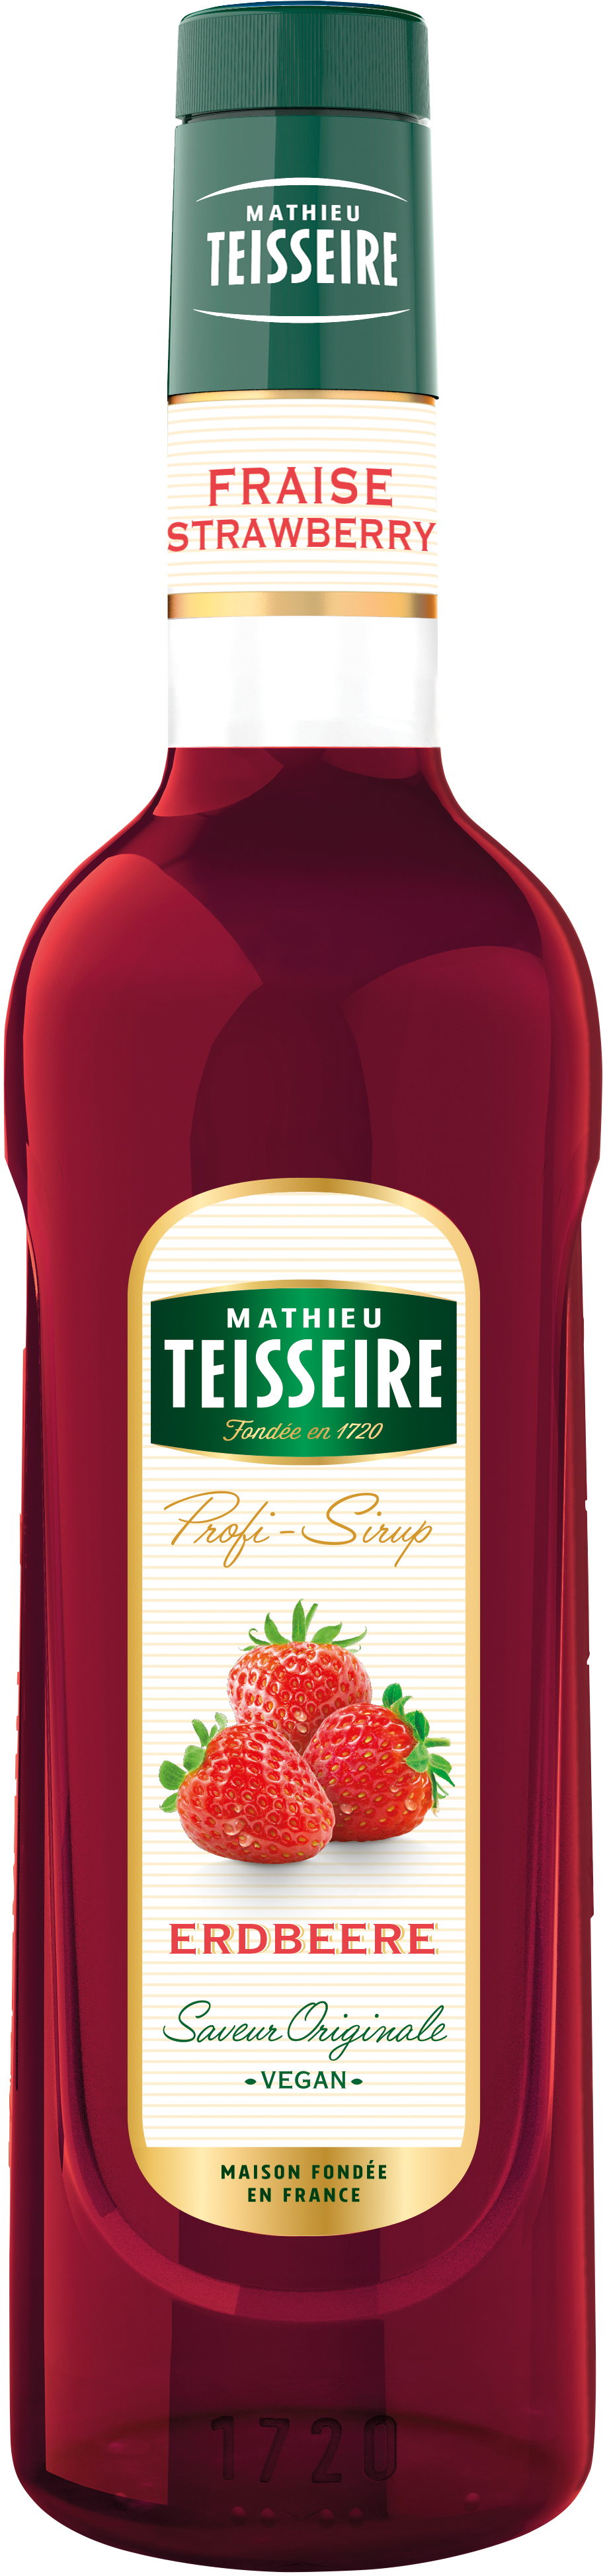 Teisseire Erdbeer Sirup - 0,7L